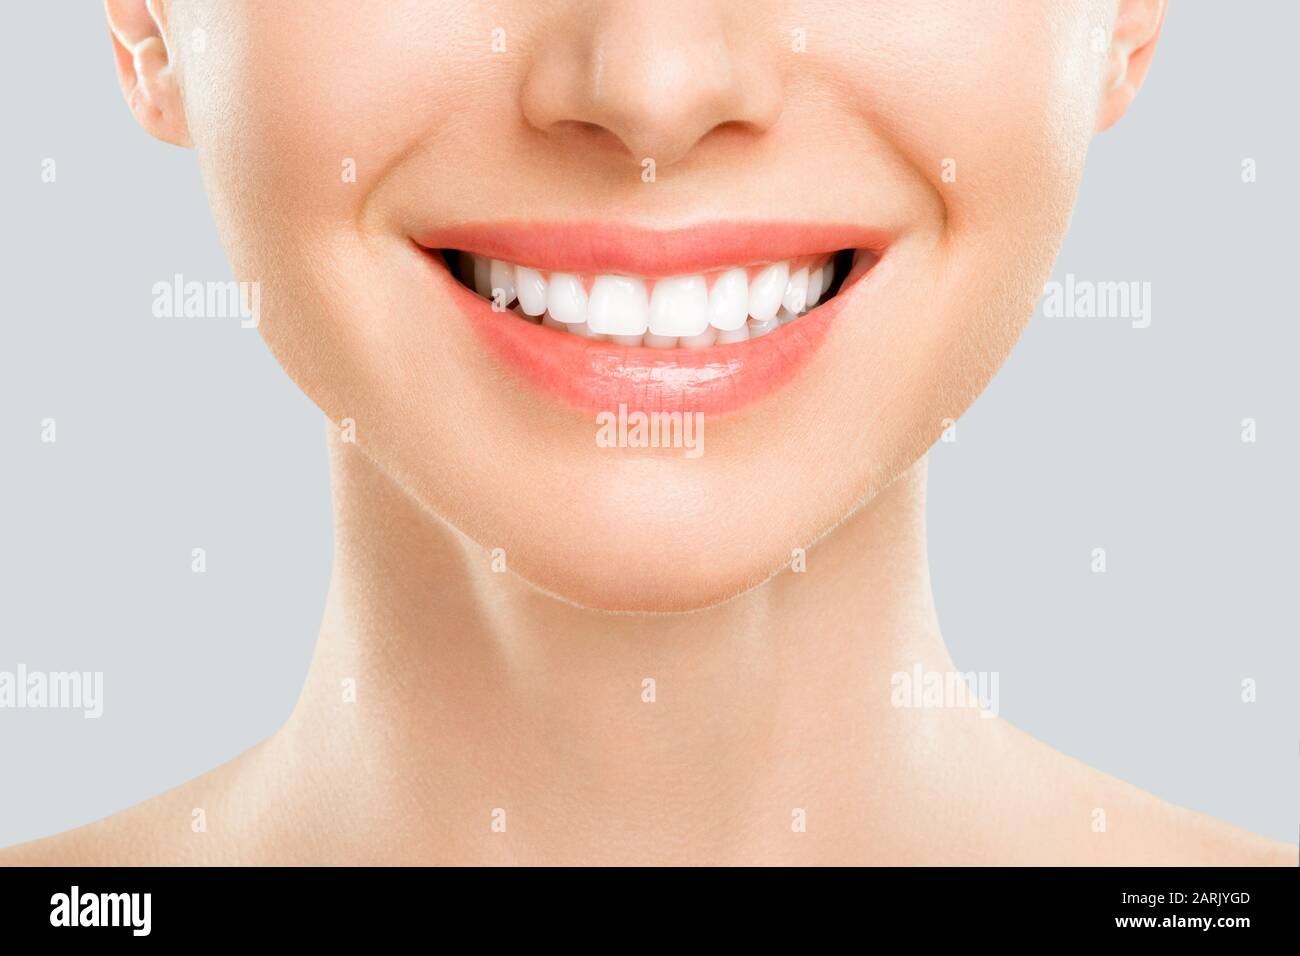 Gros plan du sourire avec des dents blanches Banque D'Images